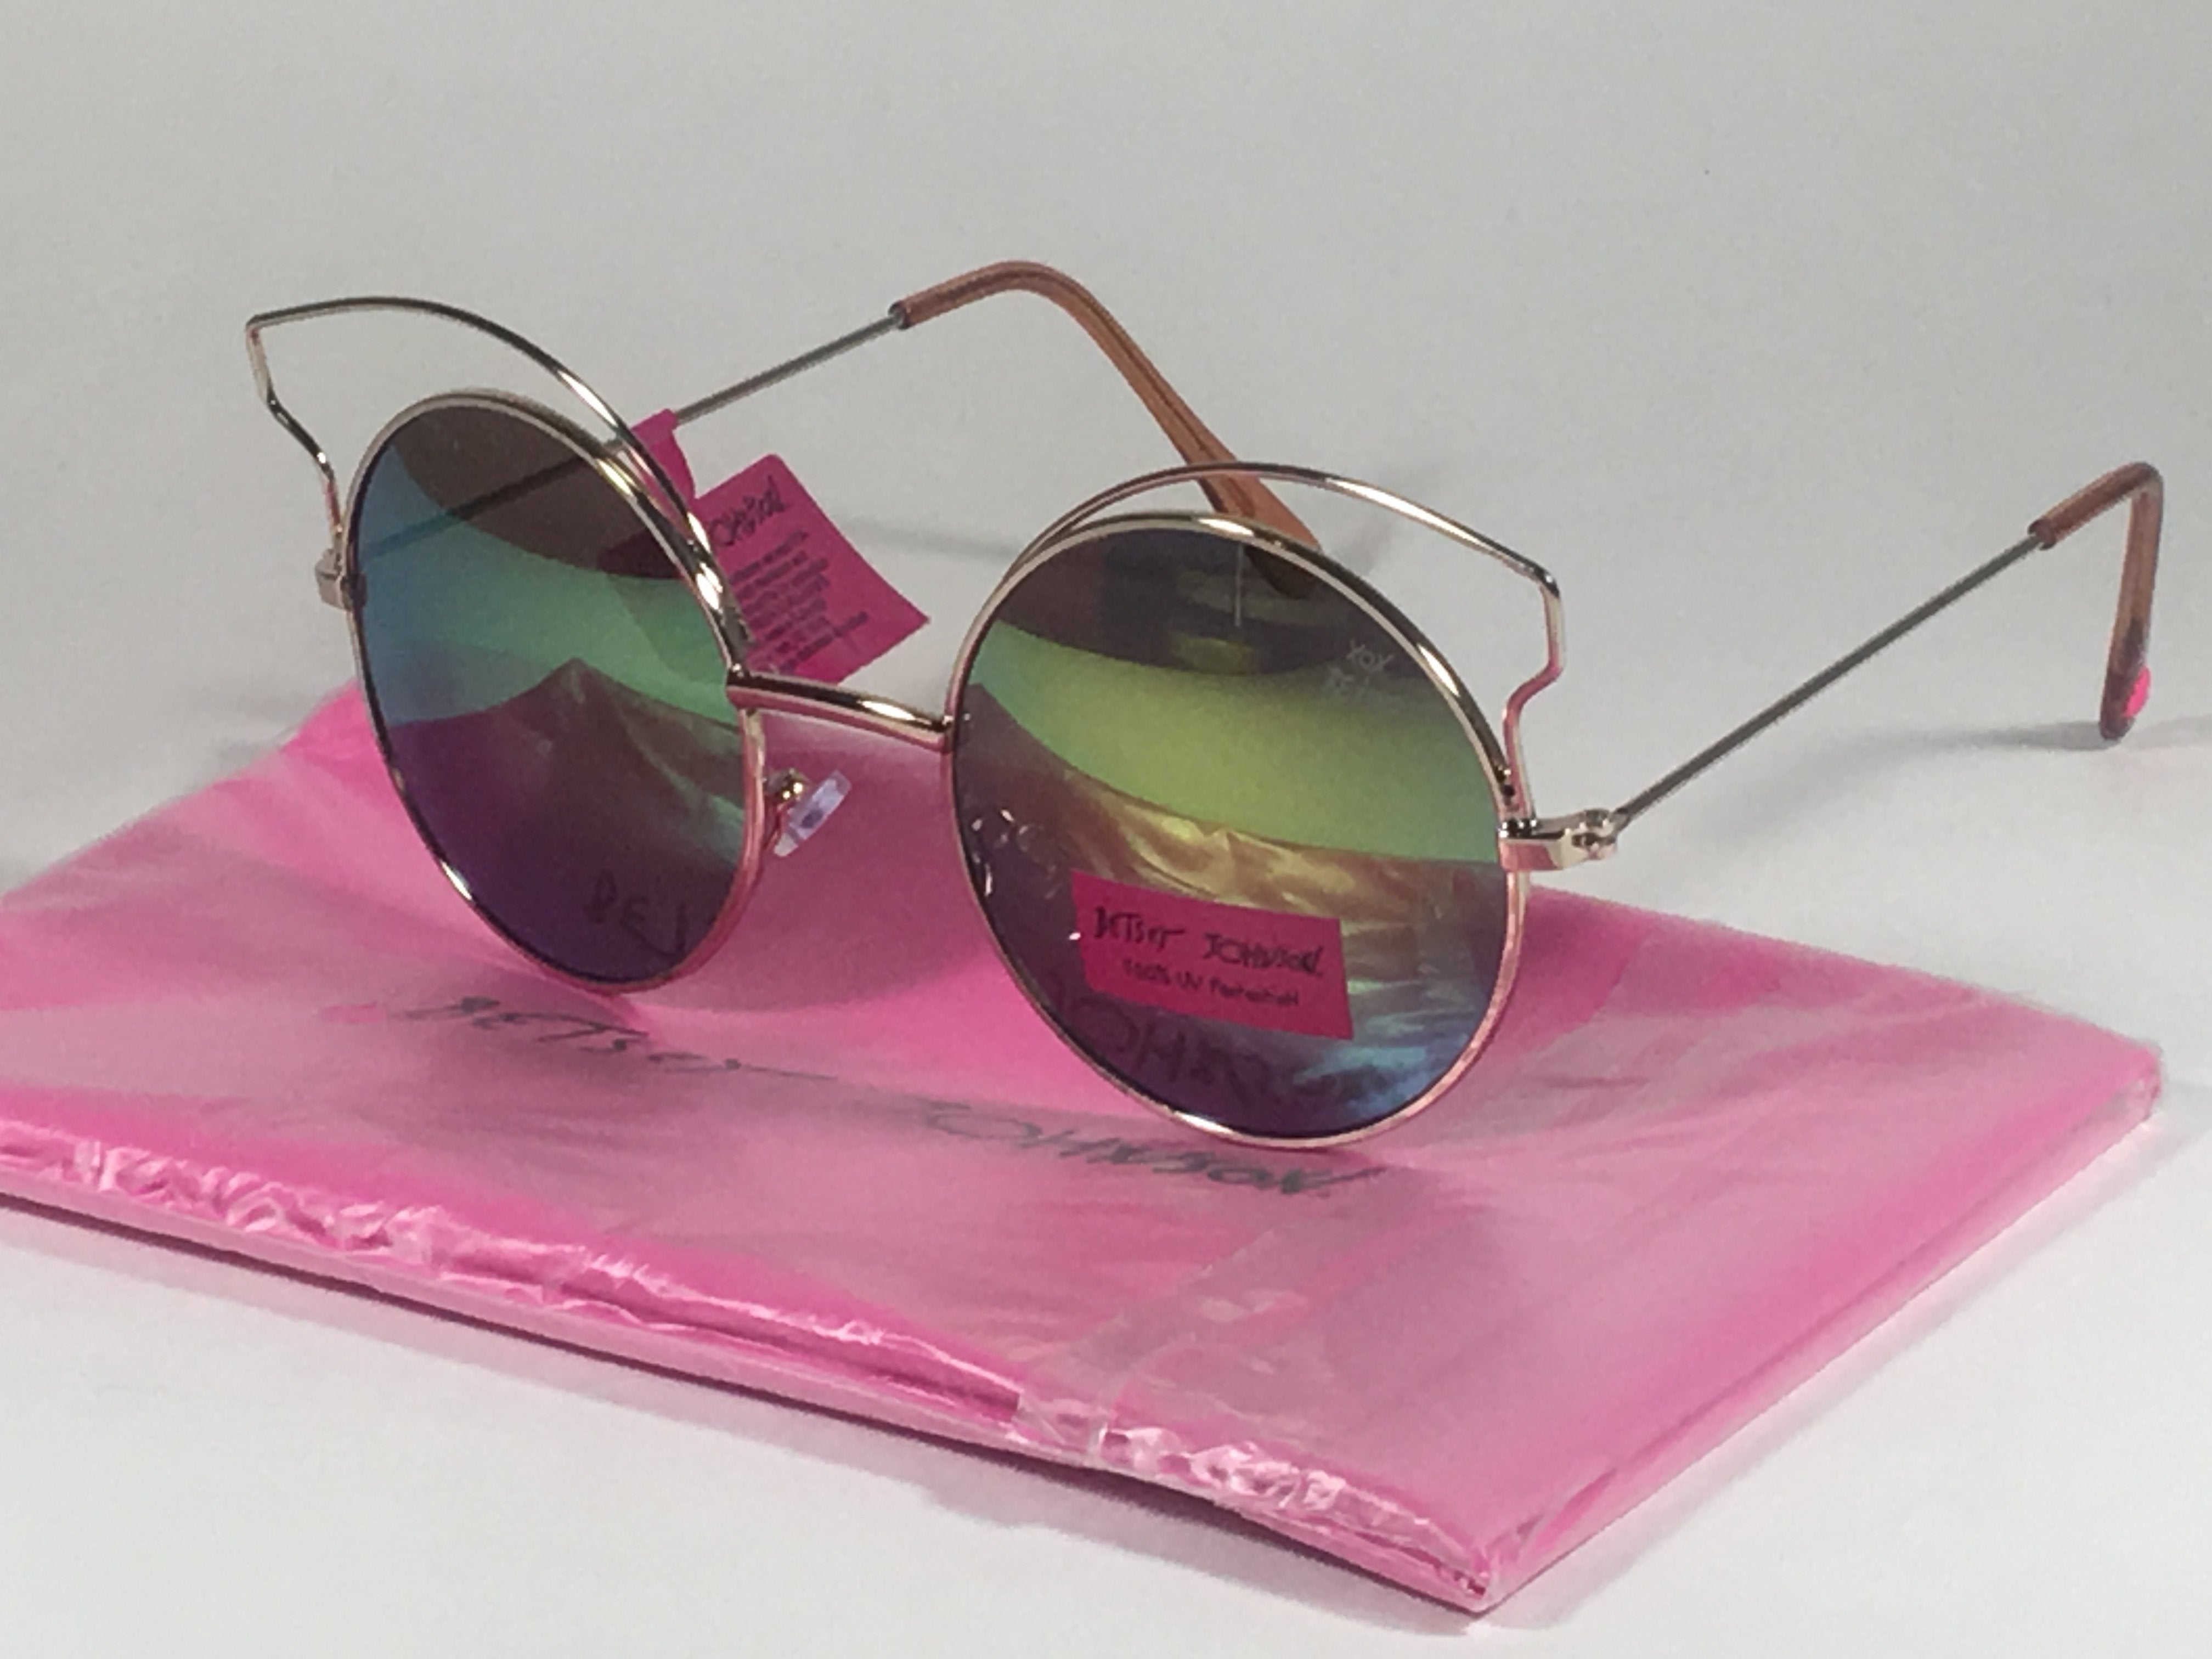 Betsey Johnson Womens Neon Mini Cat Eye Sunglasses - Pink - One Size